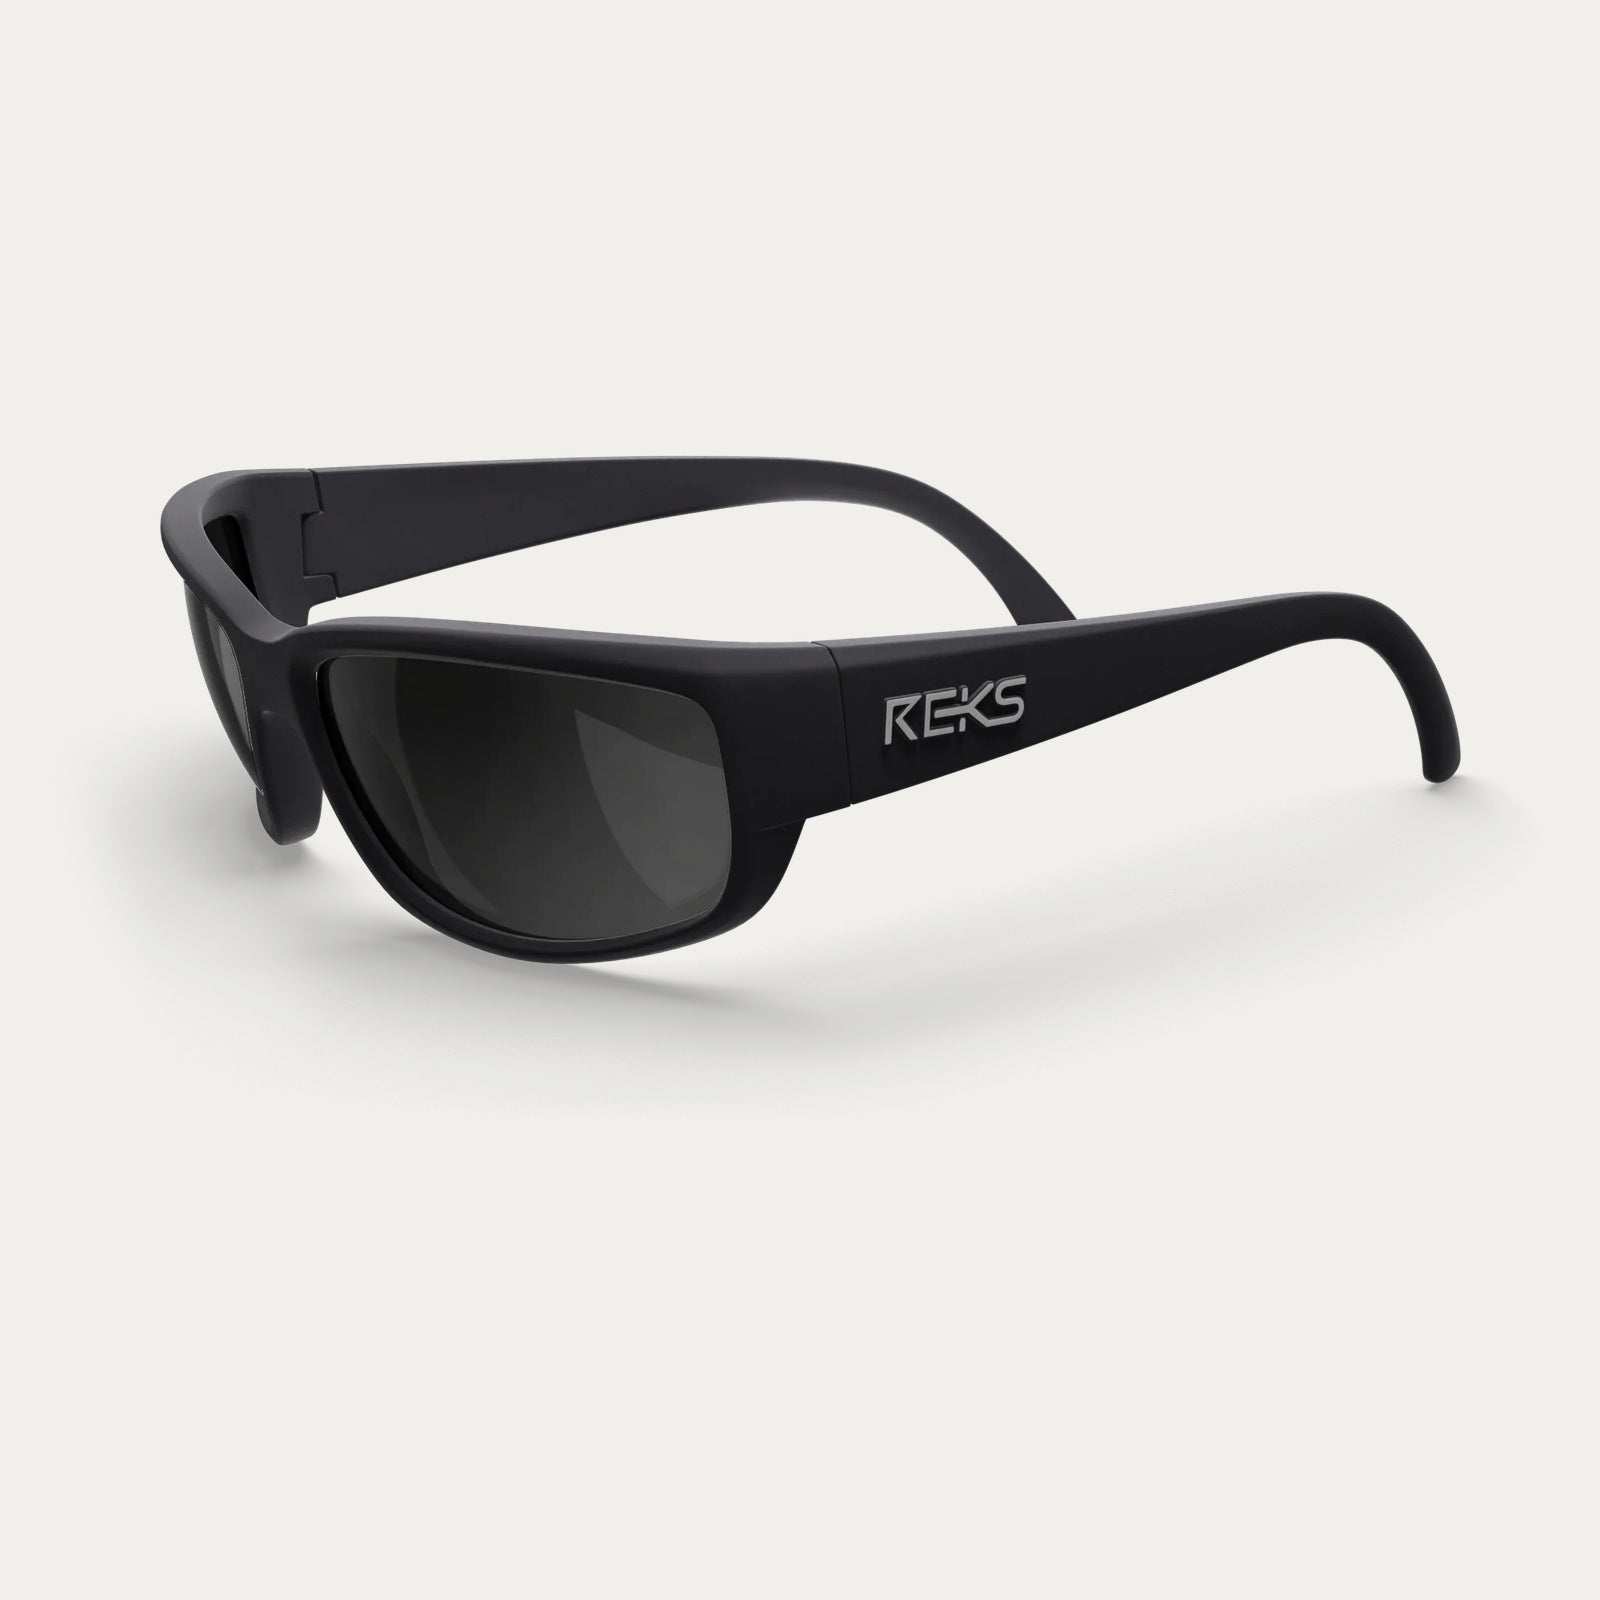 Reks | Wrap Around Polarized Polycarbonate Sunglasses Smoke